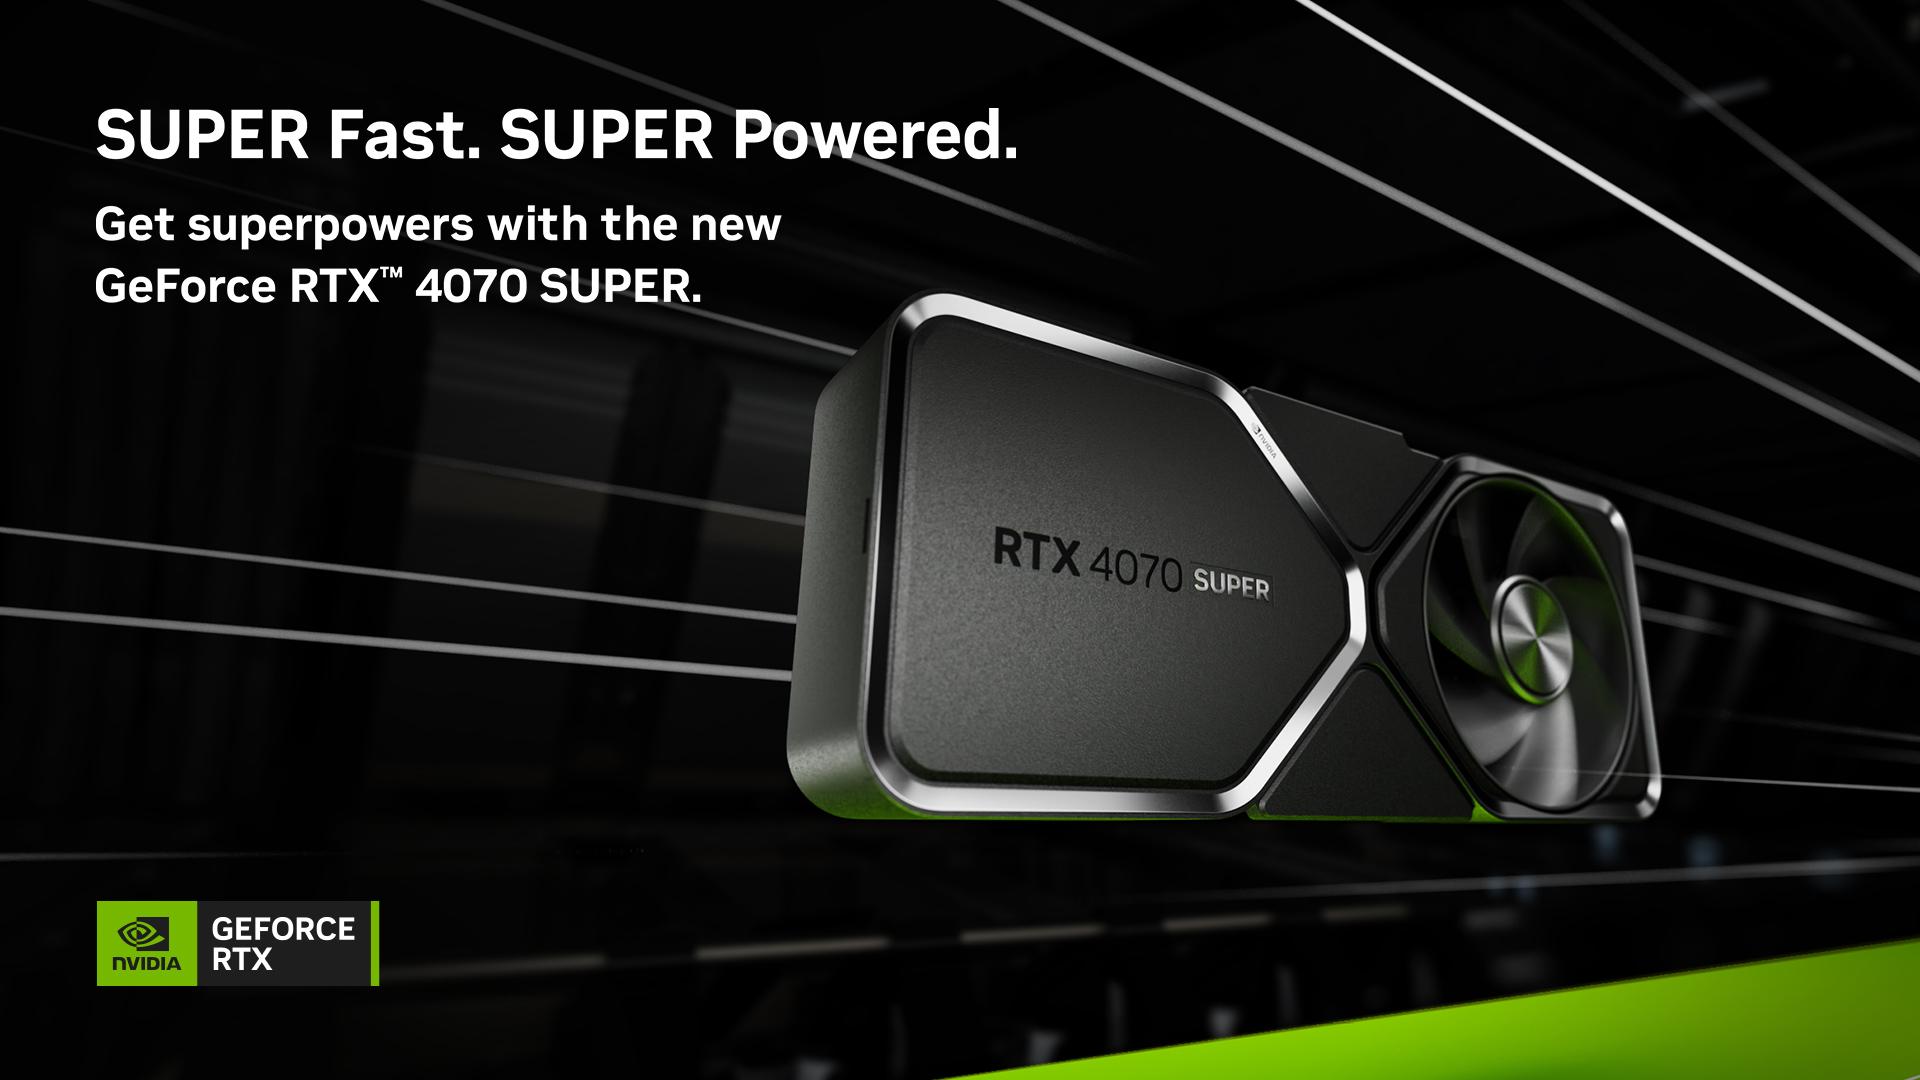 NVIDIA GeForce RTX 4070 SUPER, 4070 TI SUPER & 4080 SUPER launch 